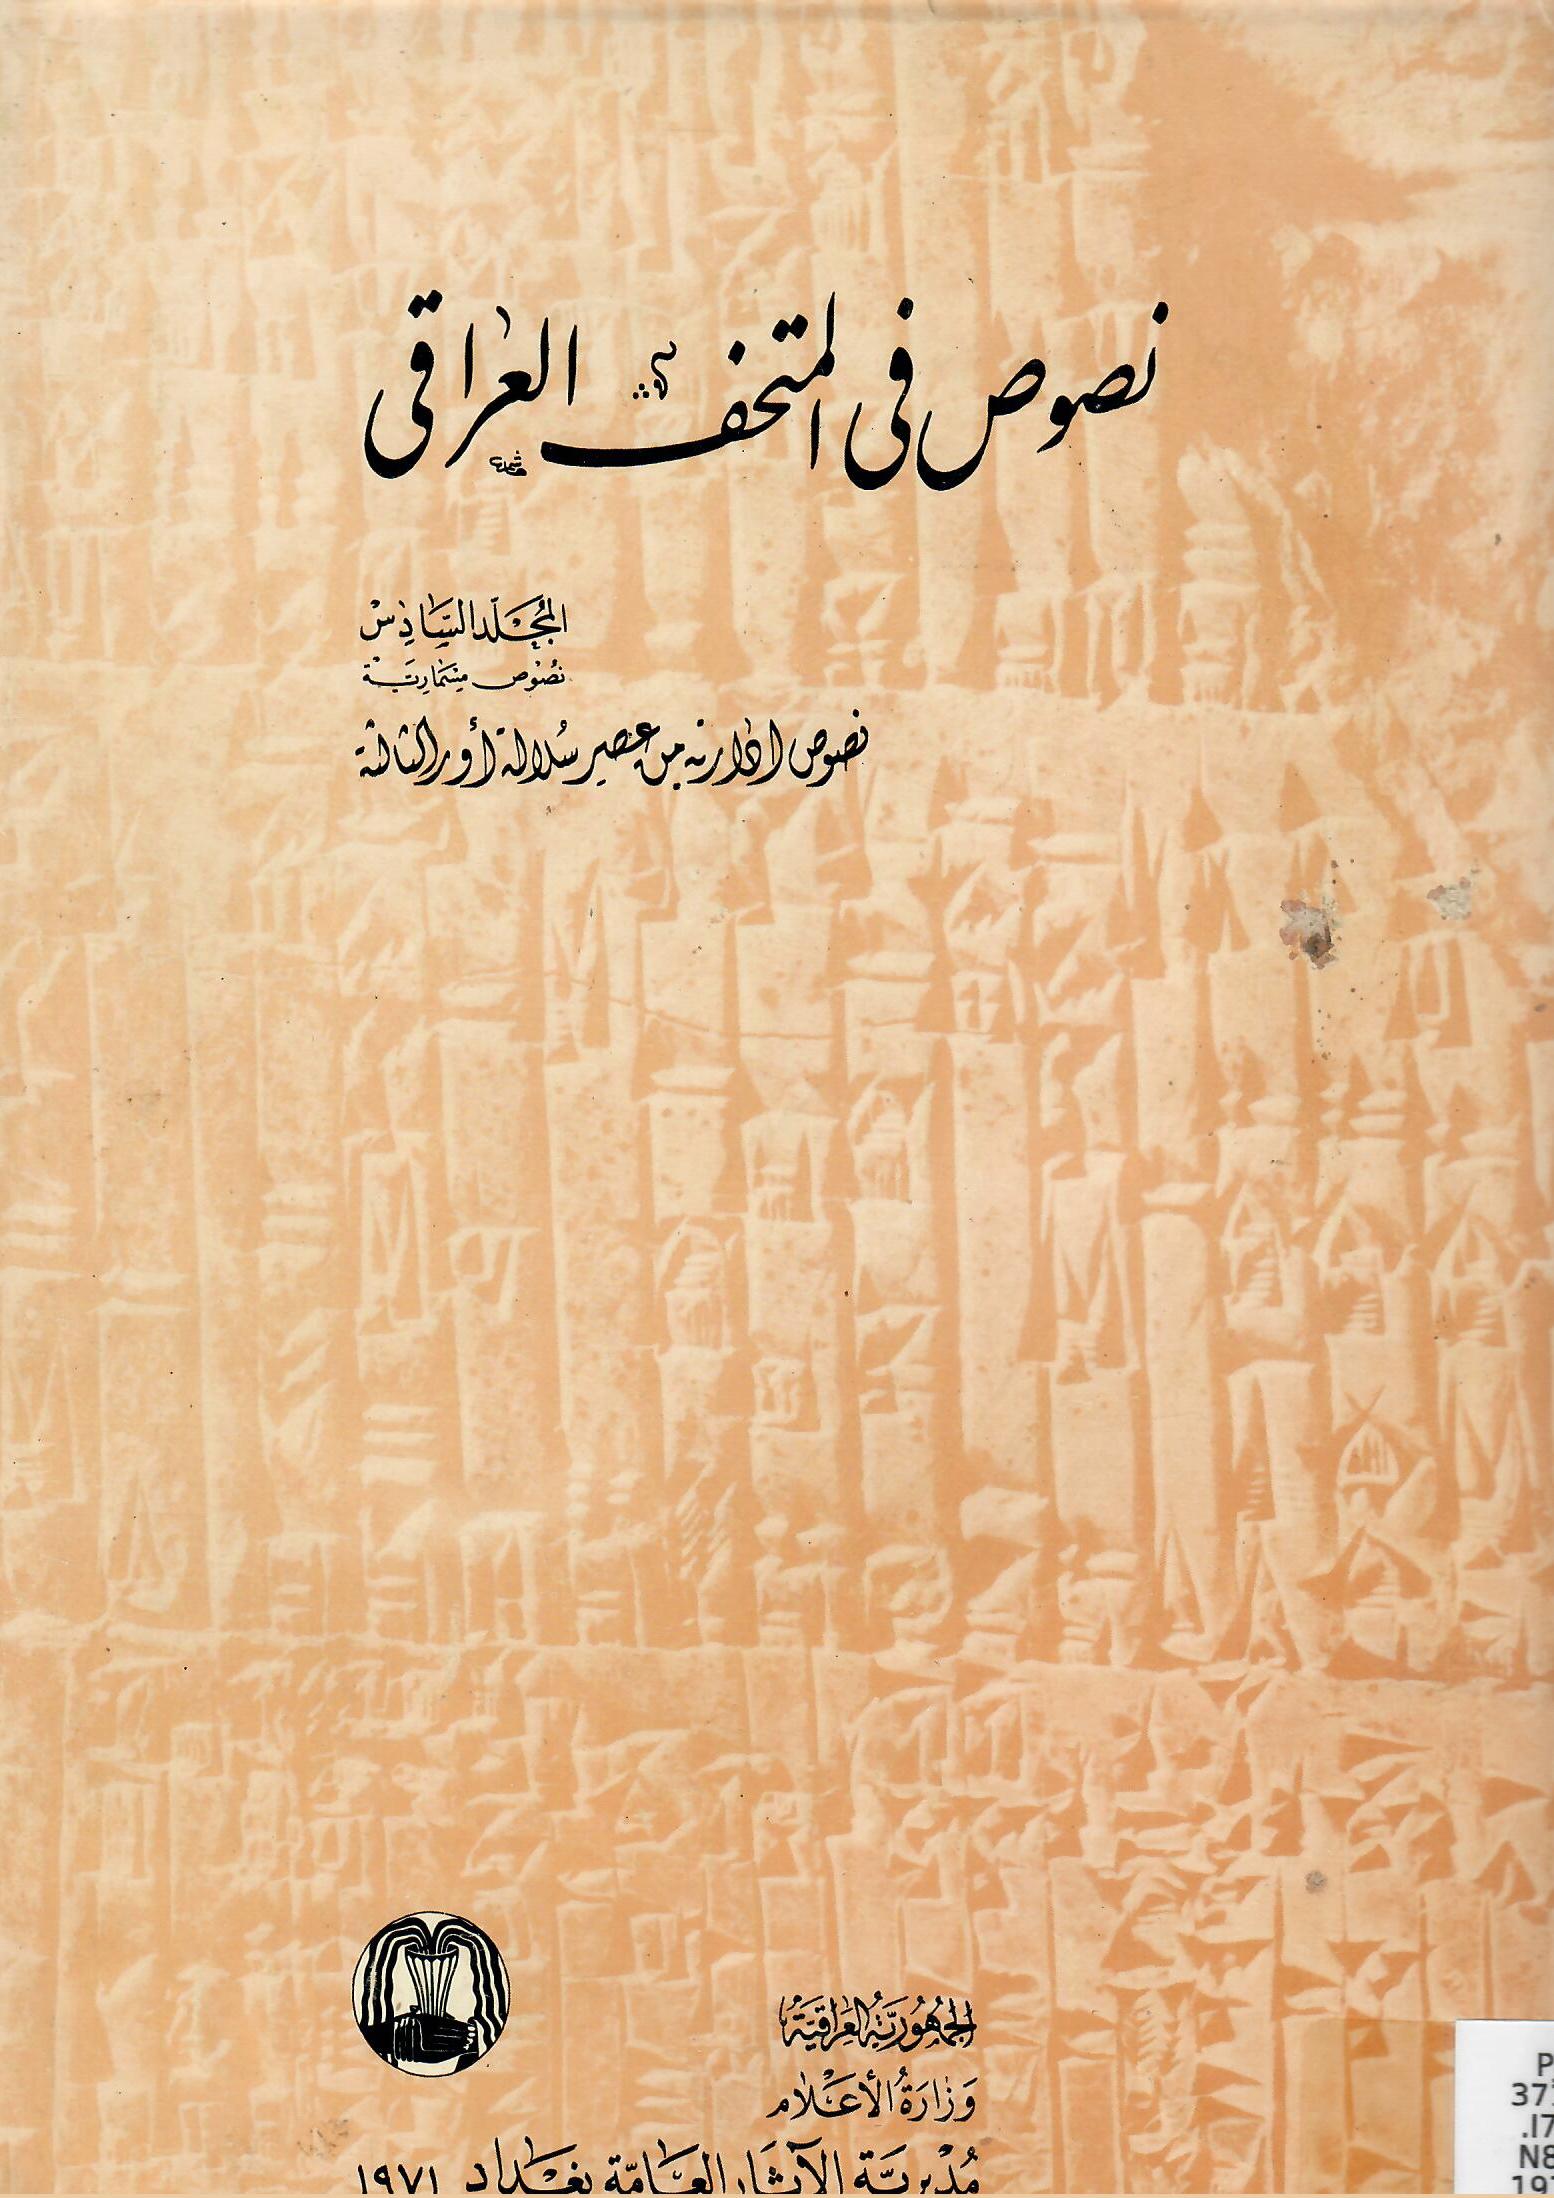 نصوص في المتحف العراقي المجلد السادس